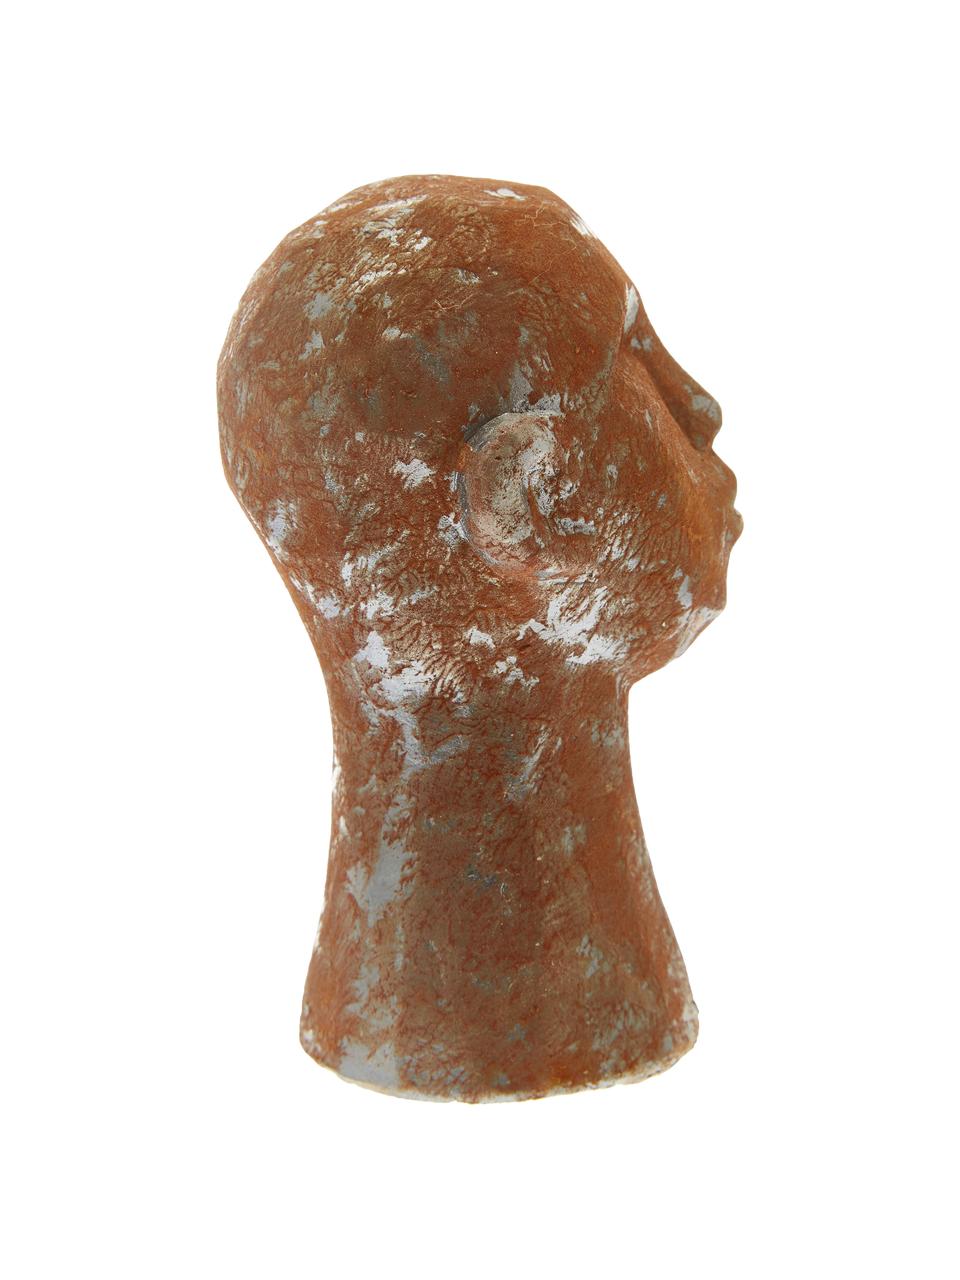 Sada dekorací Figure Head, 3 díly, Bílá, hnědá, šedá